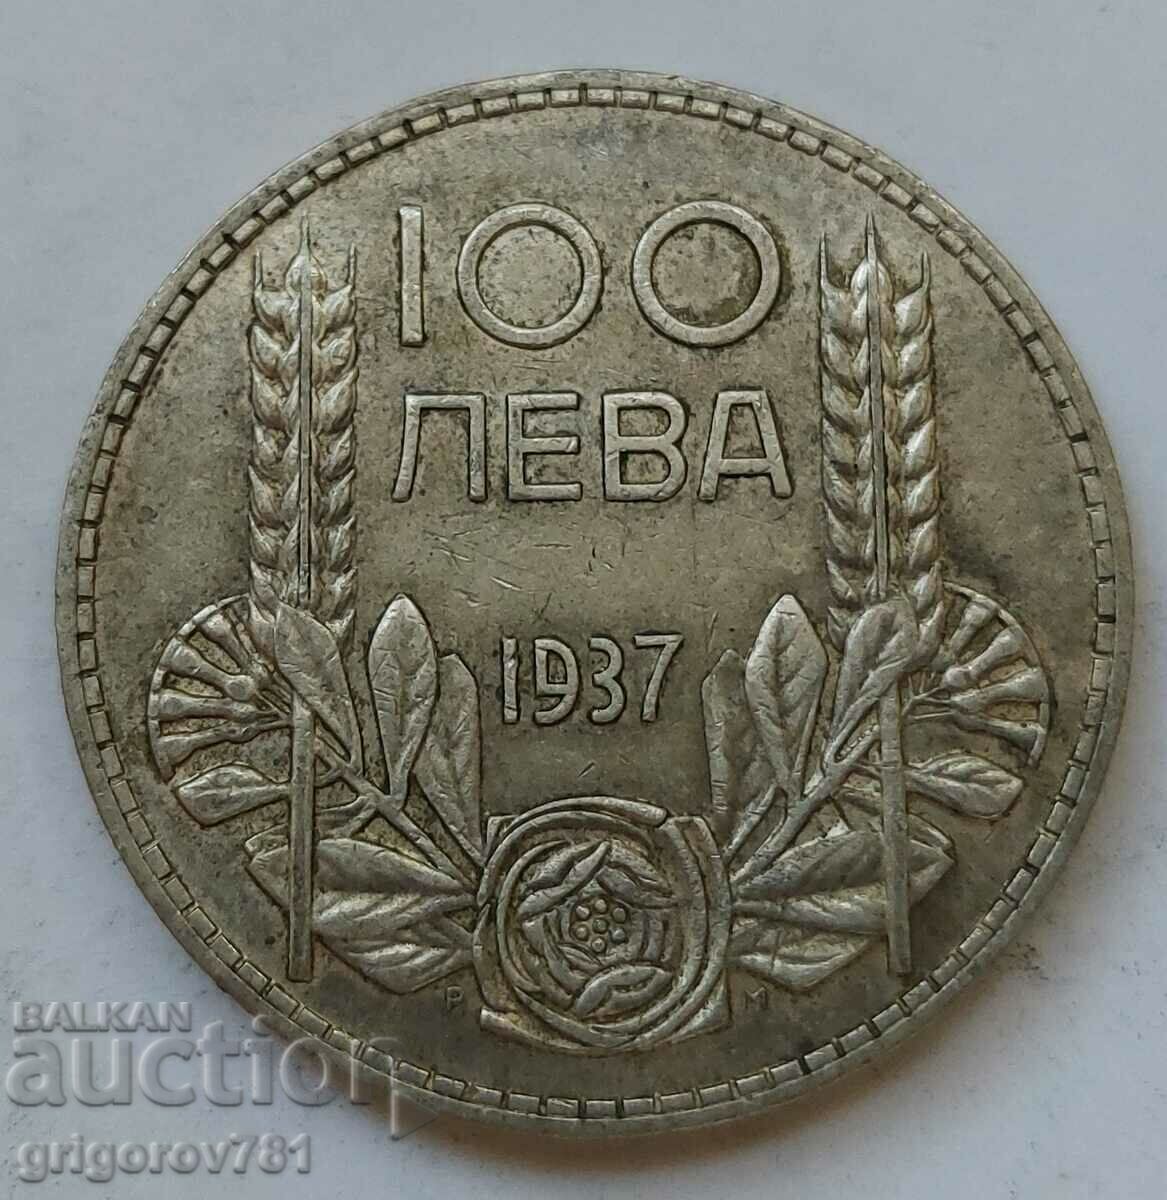 Ασήμι 100 λέβα Βουλγαρία 1937 - ασημένιο νόμισμα #139